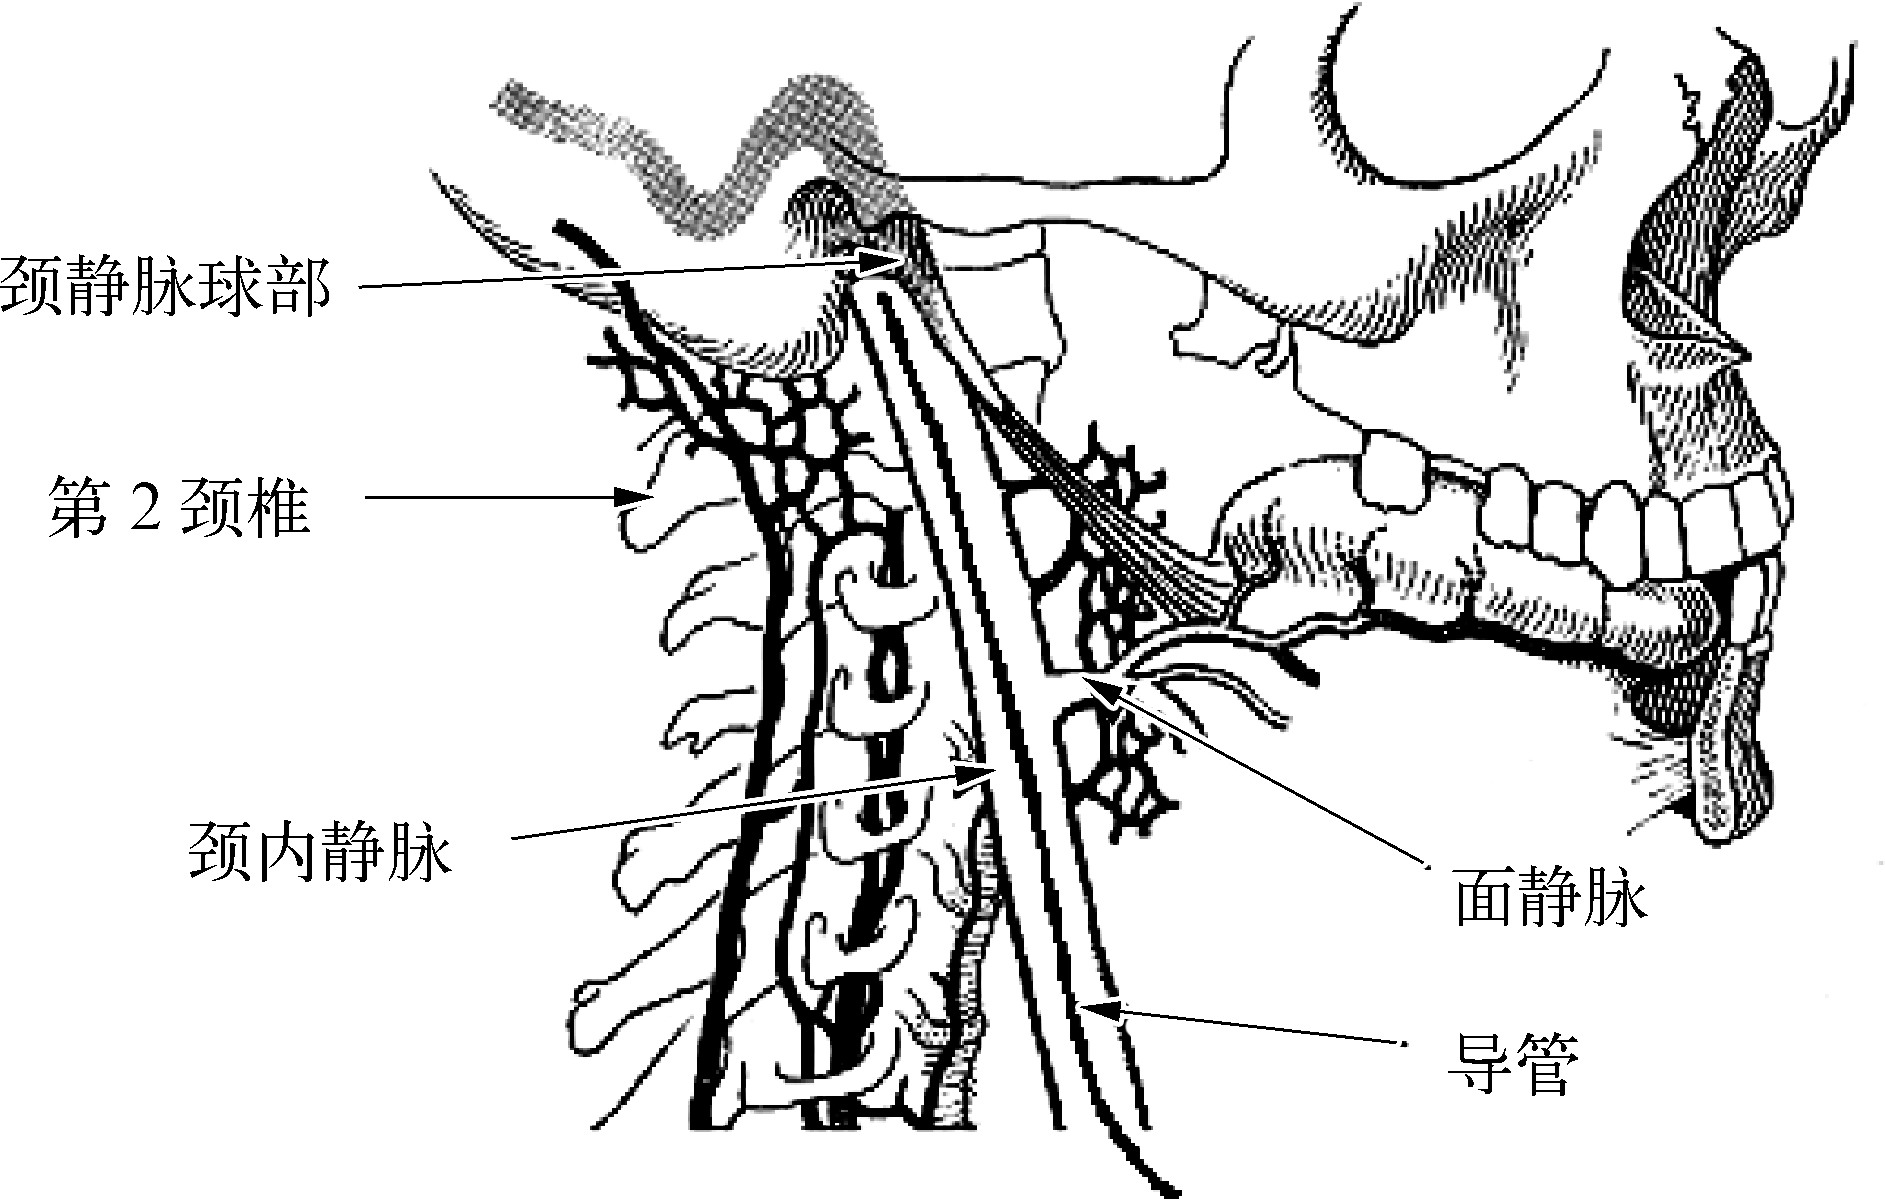 颈静脉球解剖位置图片